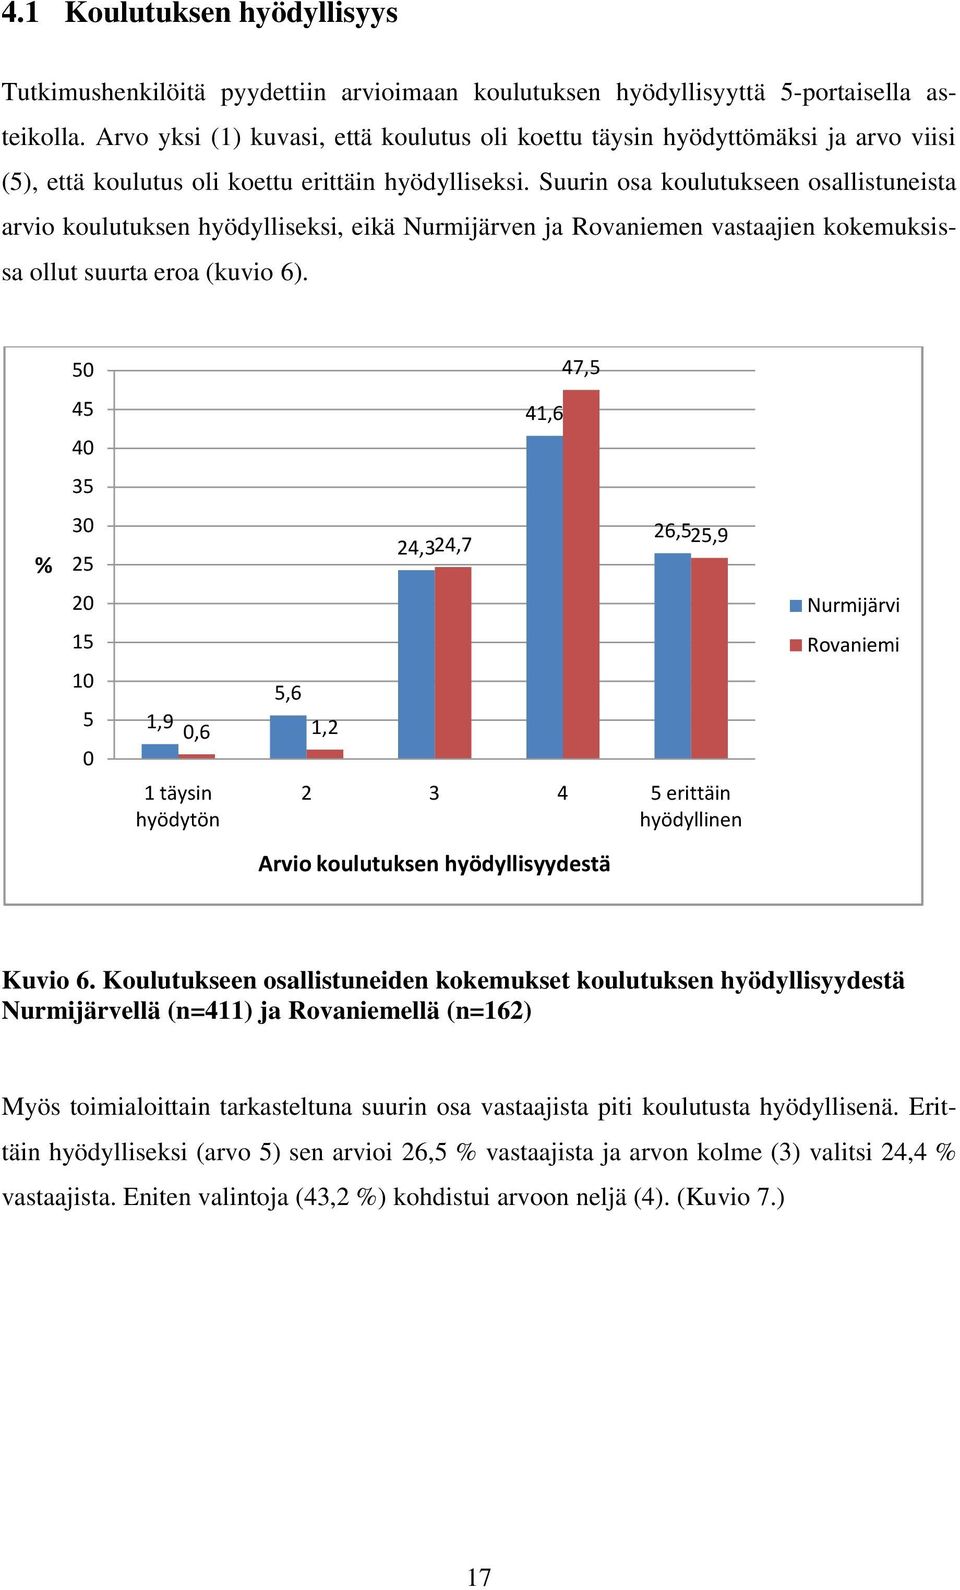 Suurin osa koulutukseen osallistuneista arvio koulutuksen hyödylliseksi, eikä Nurmijärven ja Rovaniemen vastaajien kokemuksissa ollut suurta eroa (kuvio 6).